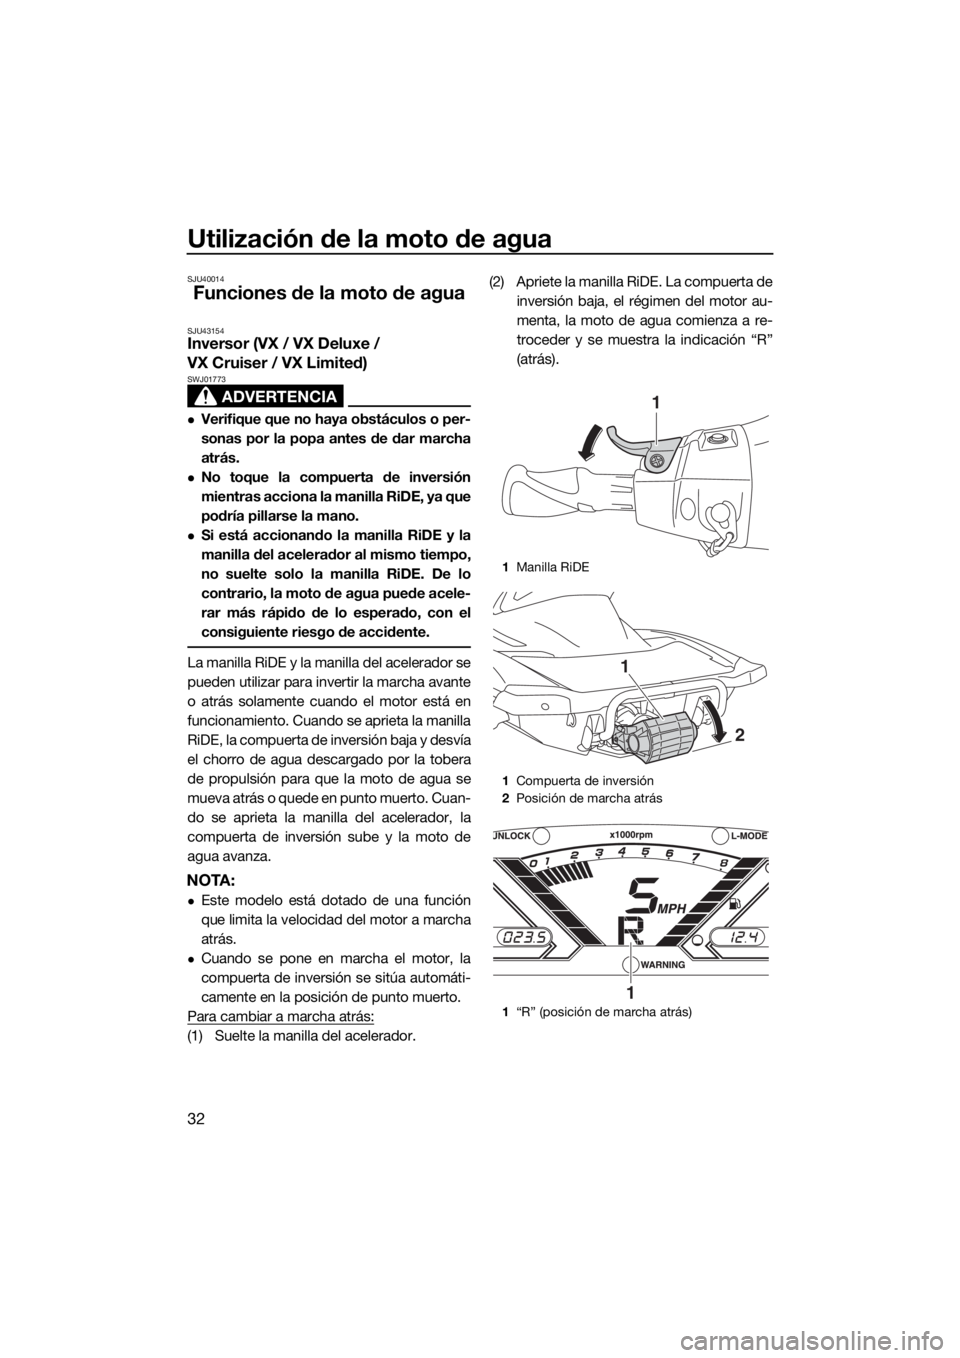 YAMAHA VX-C 2019  Manuale de Empleo (in Spanish) Utilización de la moto de agua
32
SJU40014
Funciones de la moto de agua
SJU43154Inversor (VX / VX Deluxe / 
VX Cruiser / VX Limited)
ADVERTENCIA
SWJ01773
Verifique que no haya obstáculos o per-
s